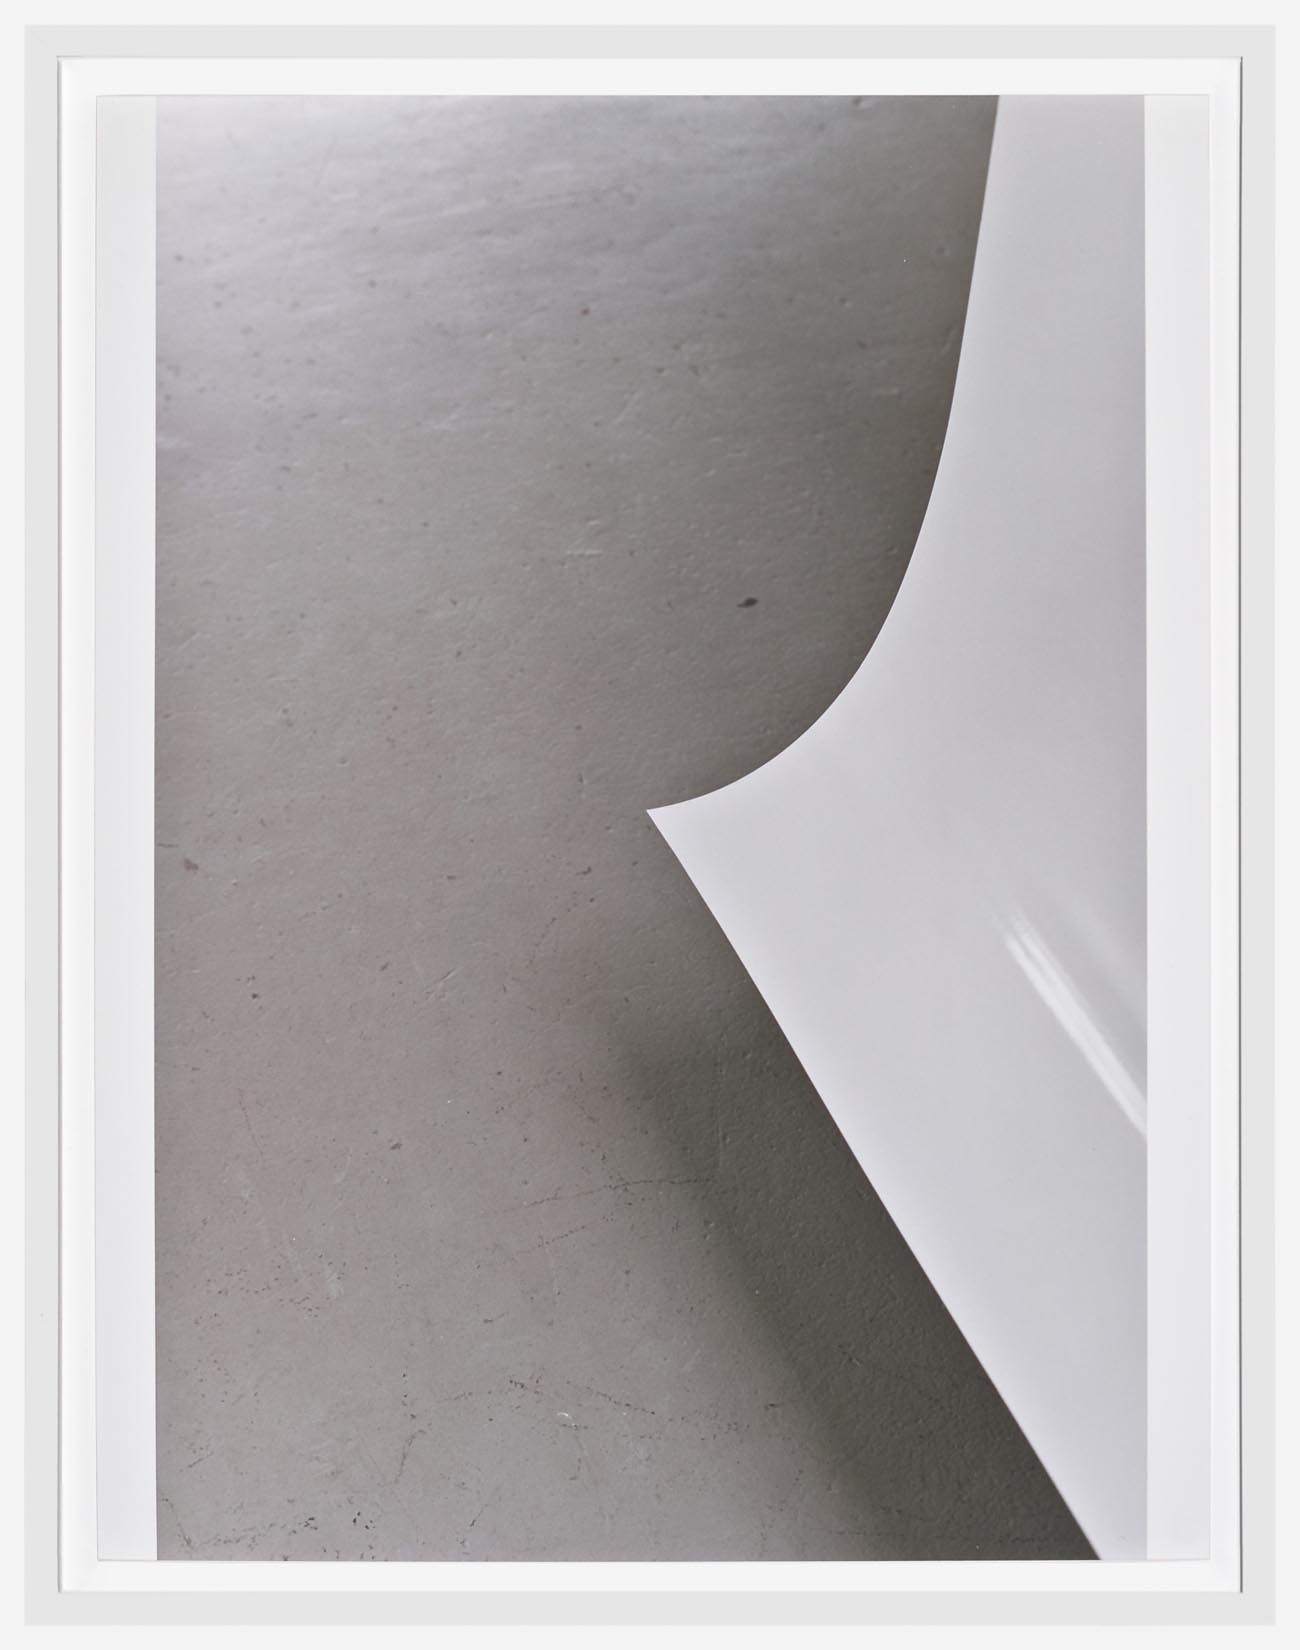     Wolfgang Tillmans Paper Drop (White) B 2004 c-prints 44 x 33.9 cm 